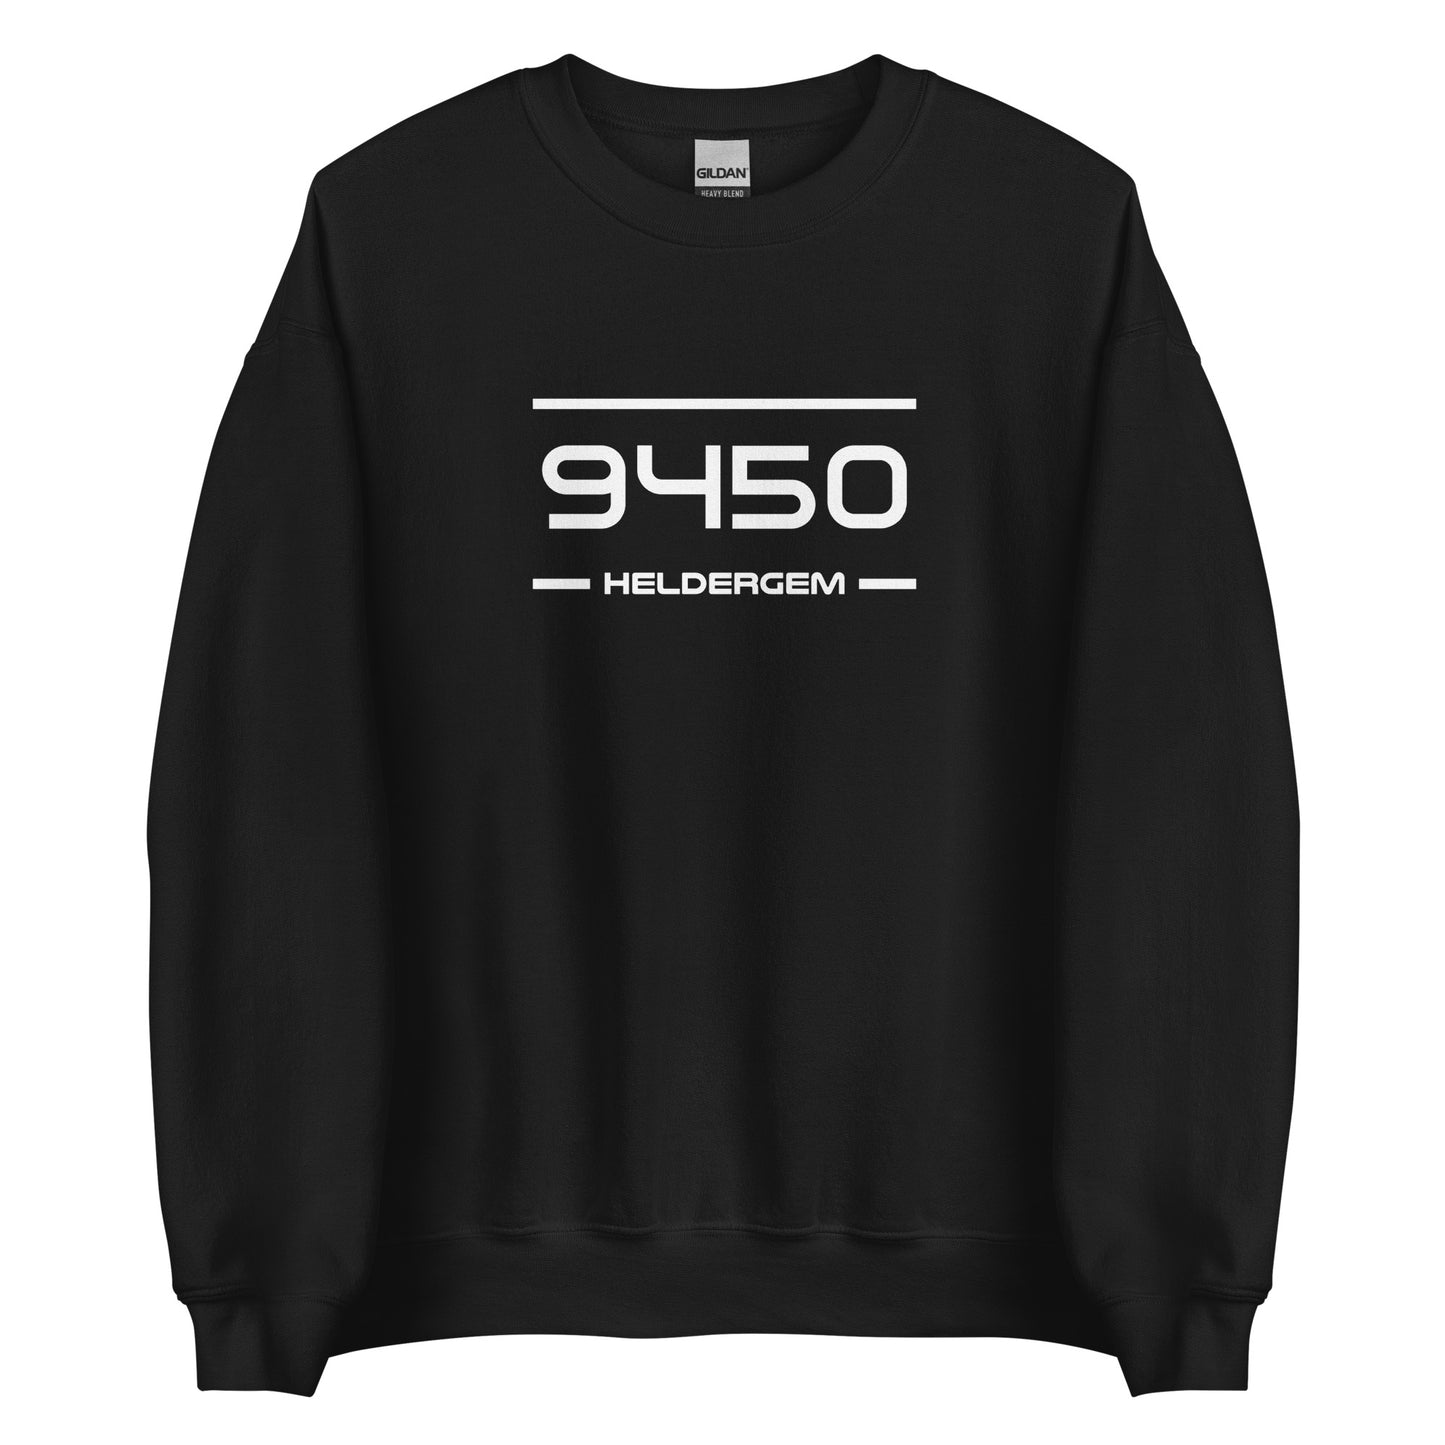 Sweater - 9450 - Heldergem (M/V)